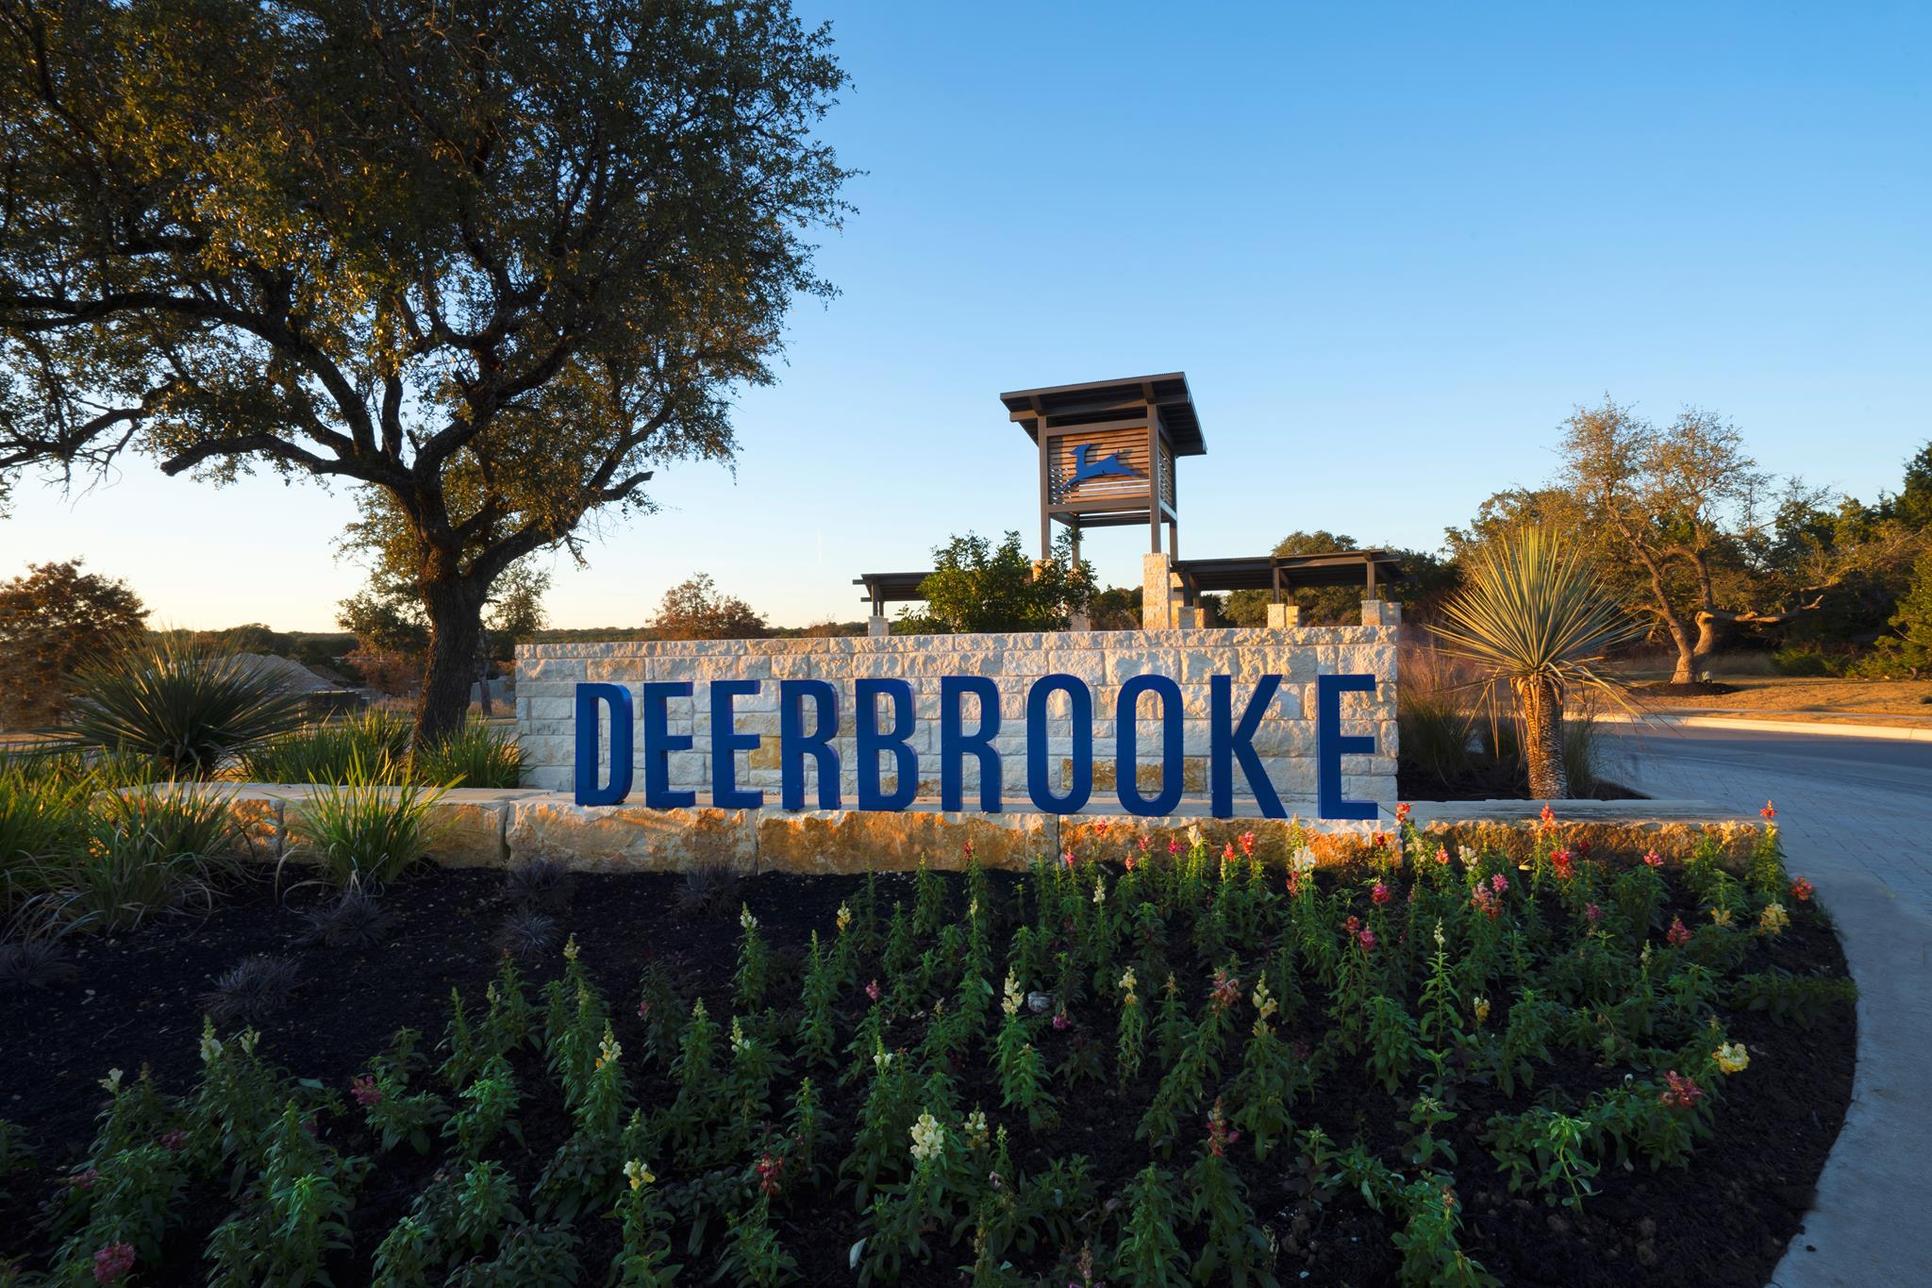 Deerbrooke entry monument, Leander TX